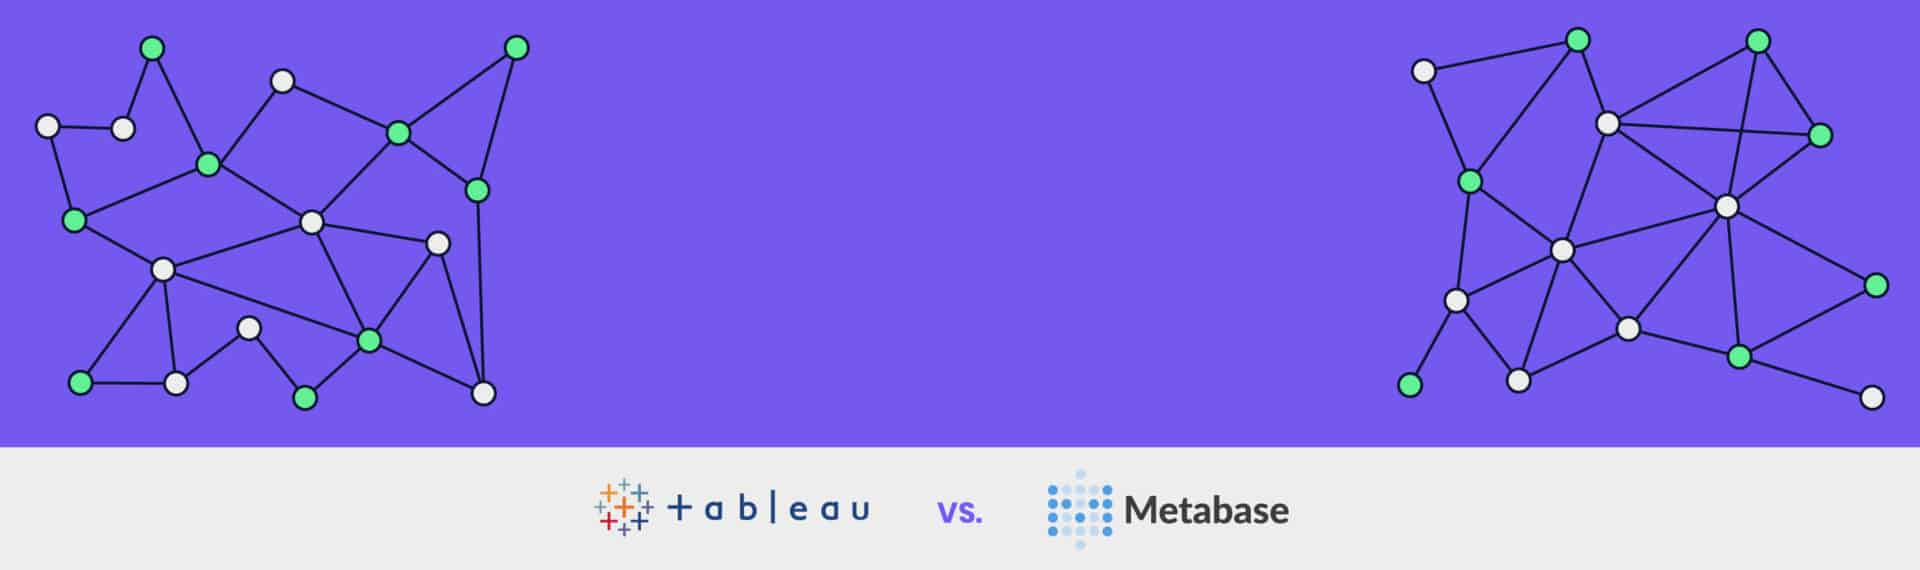 Metabase vs. Tableau